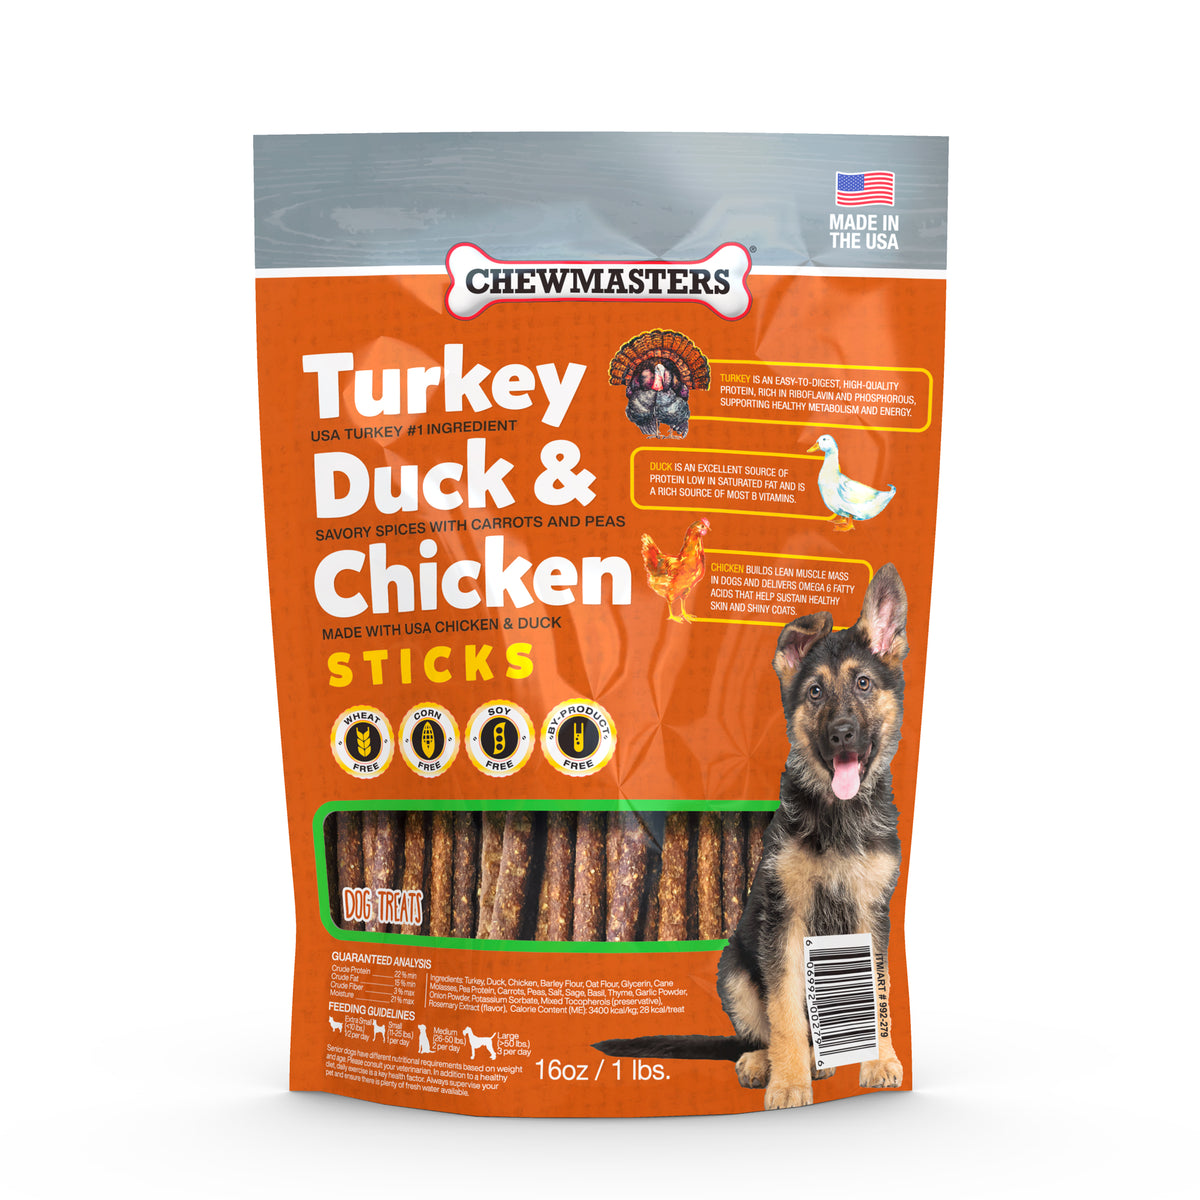 Turkey, Duck & Chicken - Nutrient-Rich Dog Treats for Optimal Health